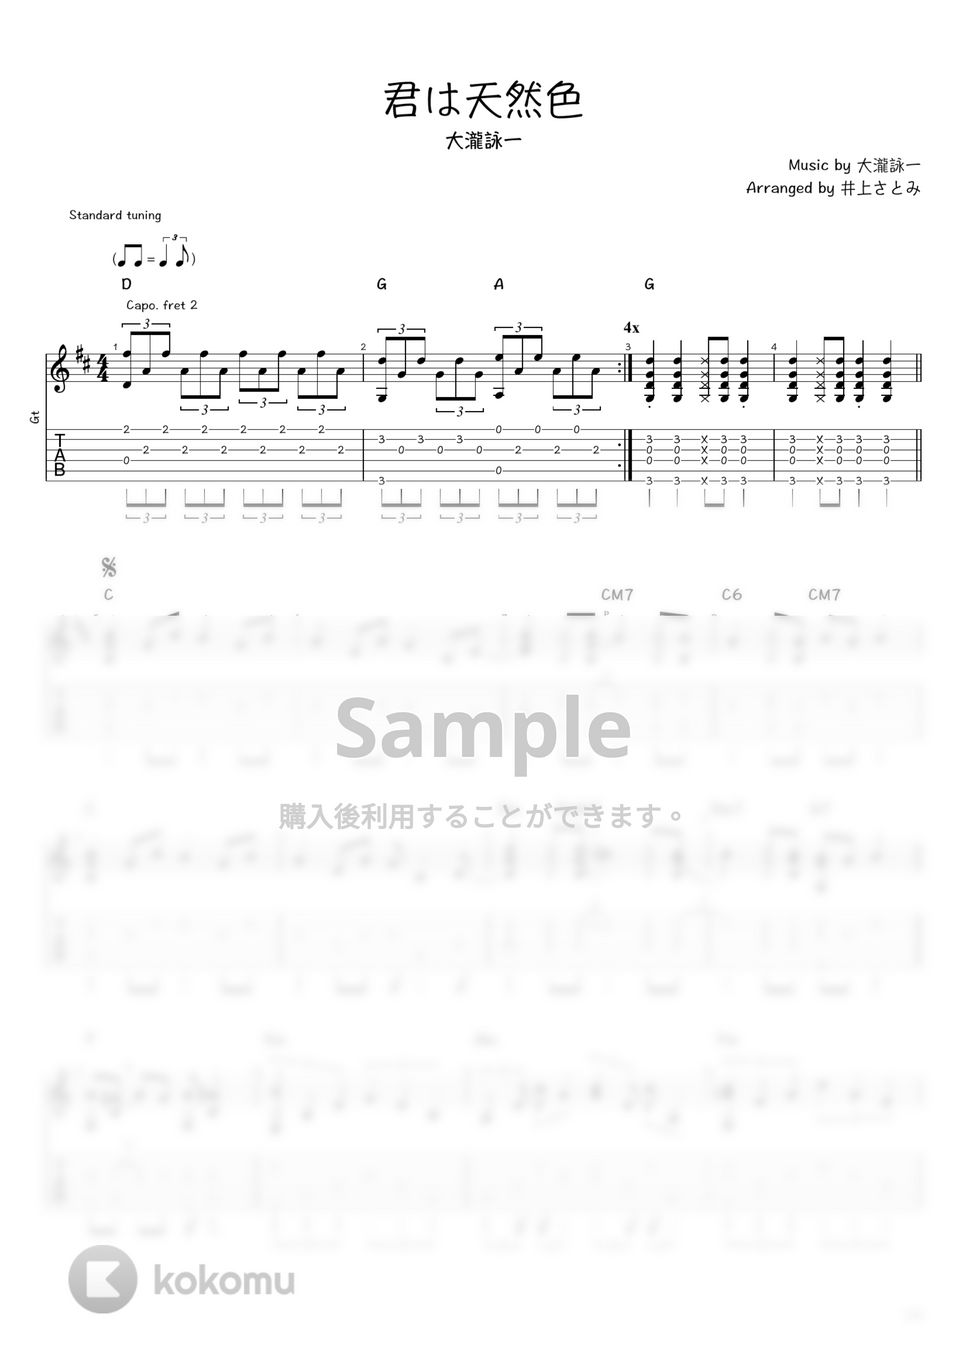 大瀧詠一 - 君は天然色 (ソロギター / タブ譜) by 井上さとみ